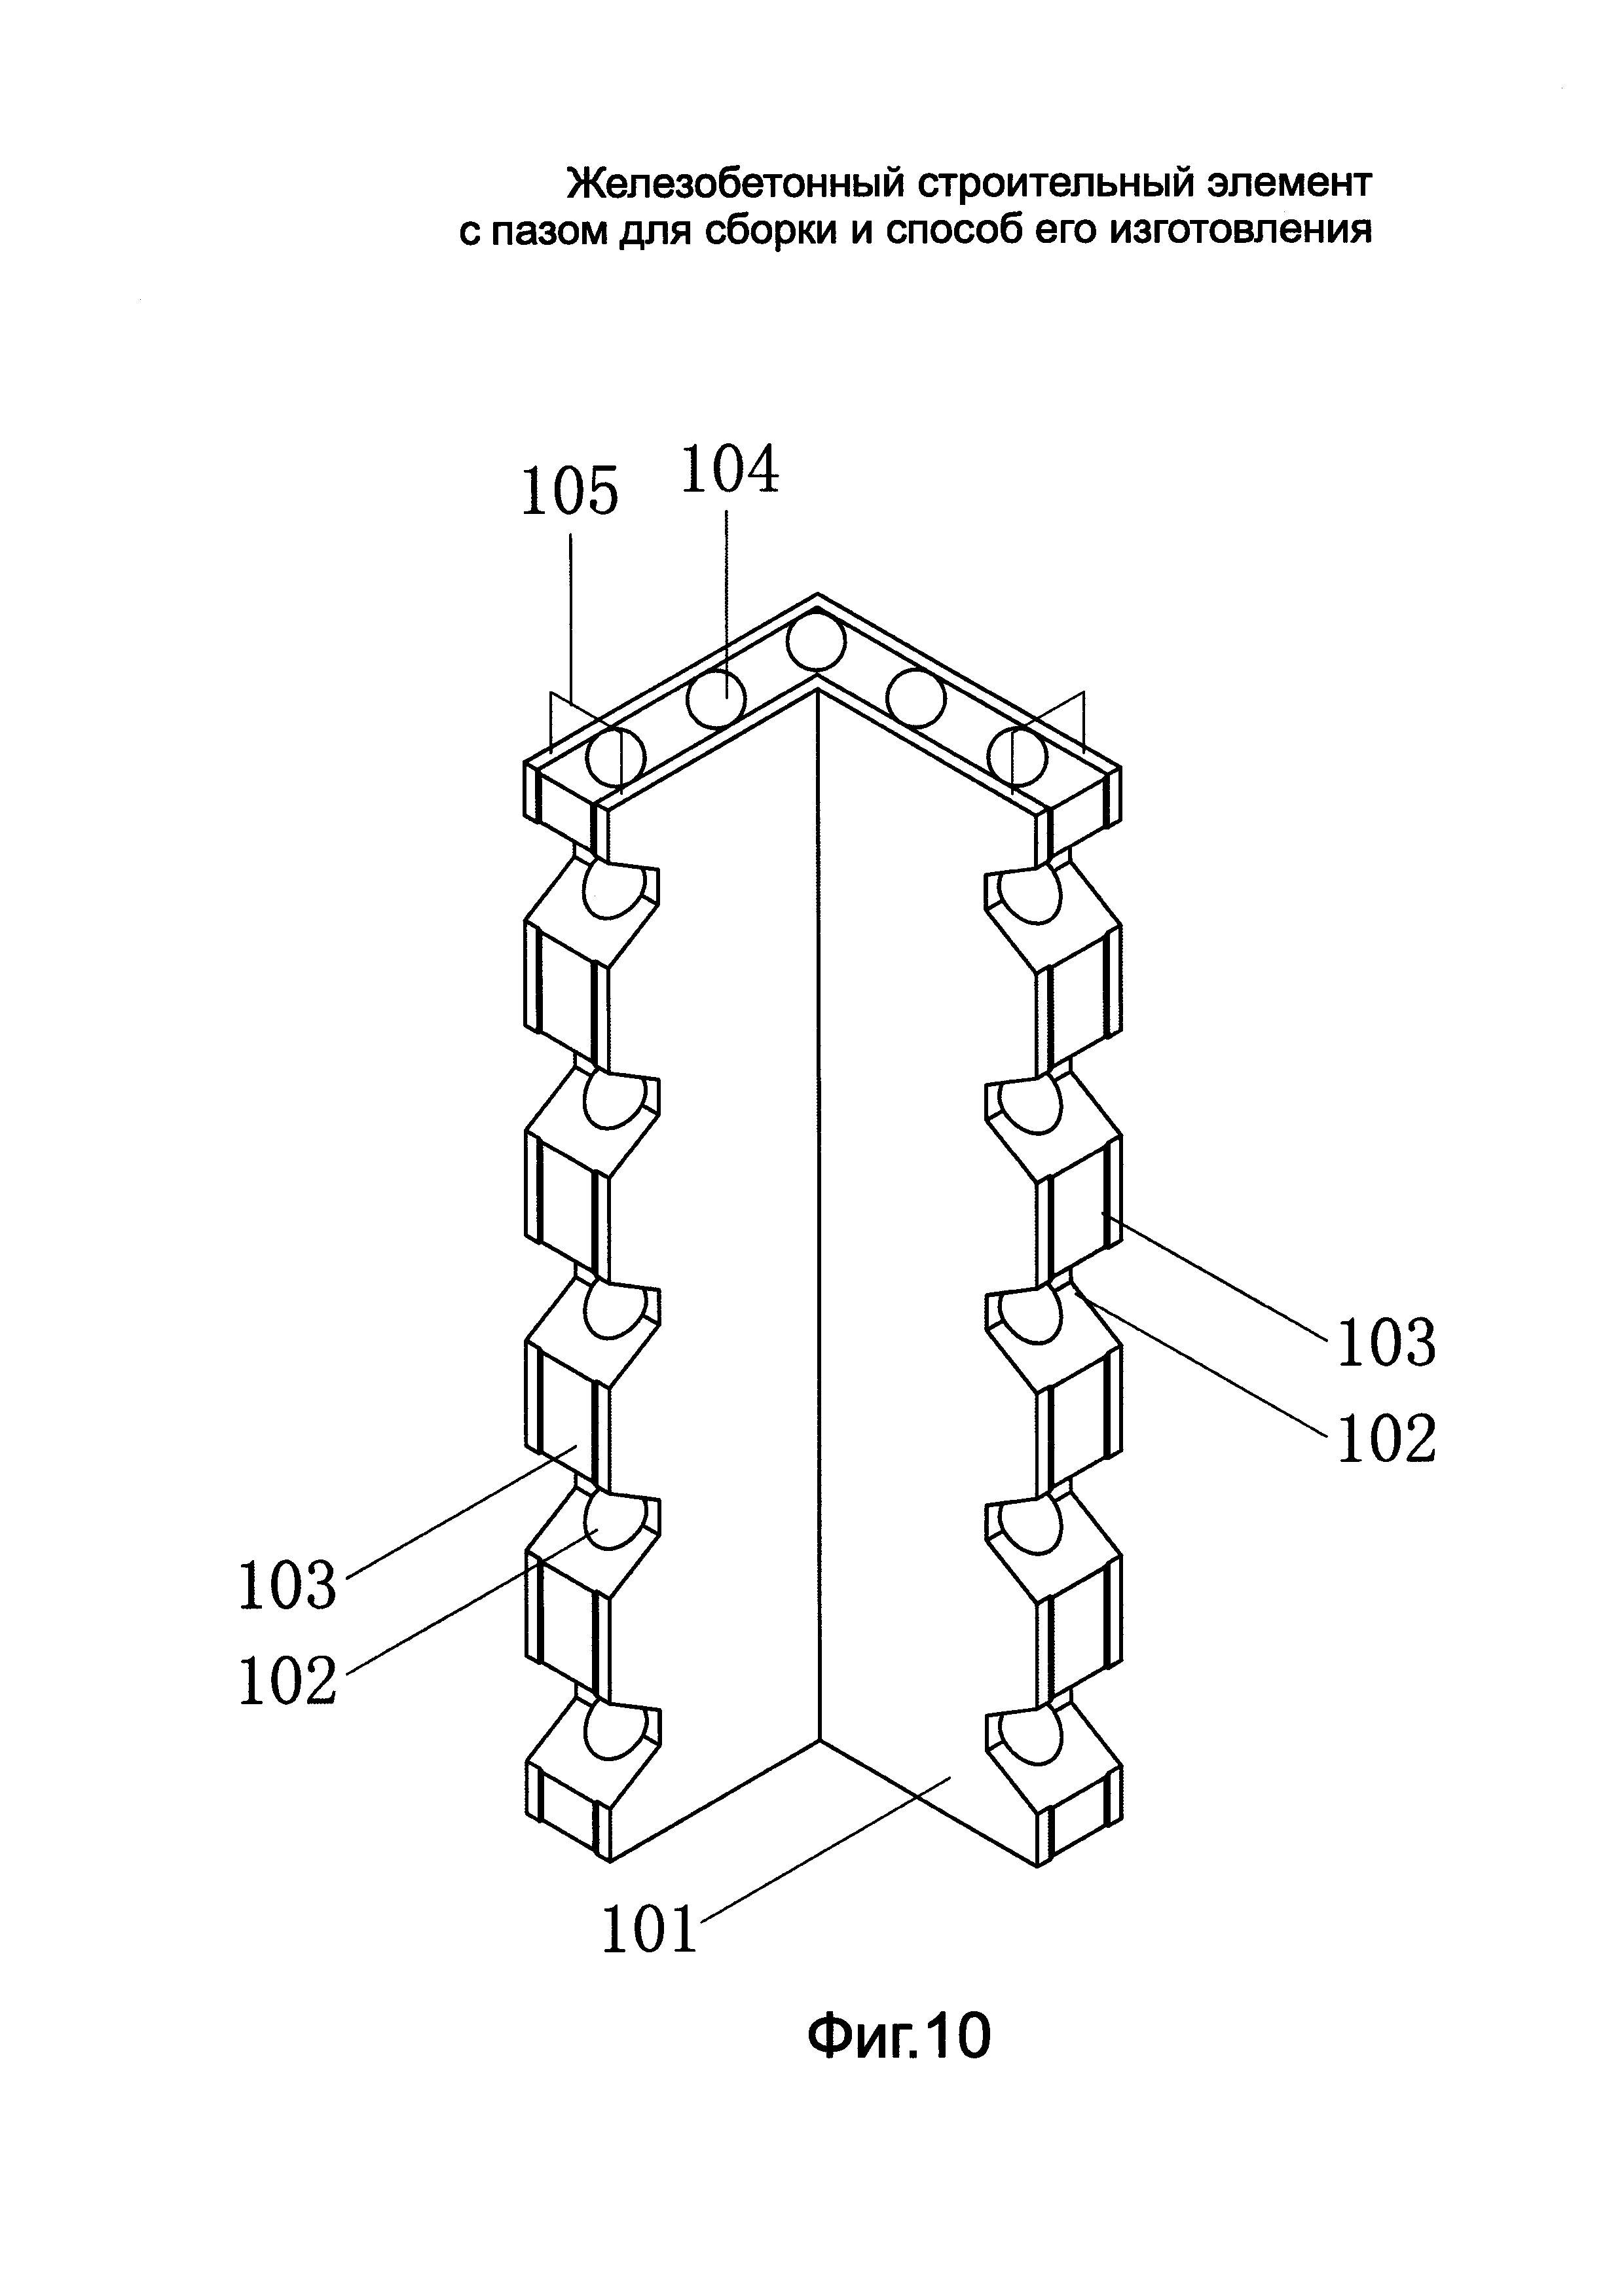 Железобетонный строительный элемент с пазом для сборки и способ его изготовления